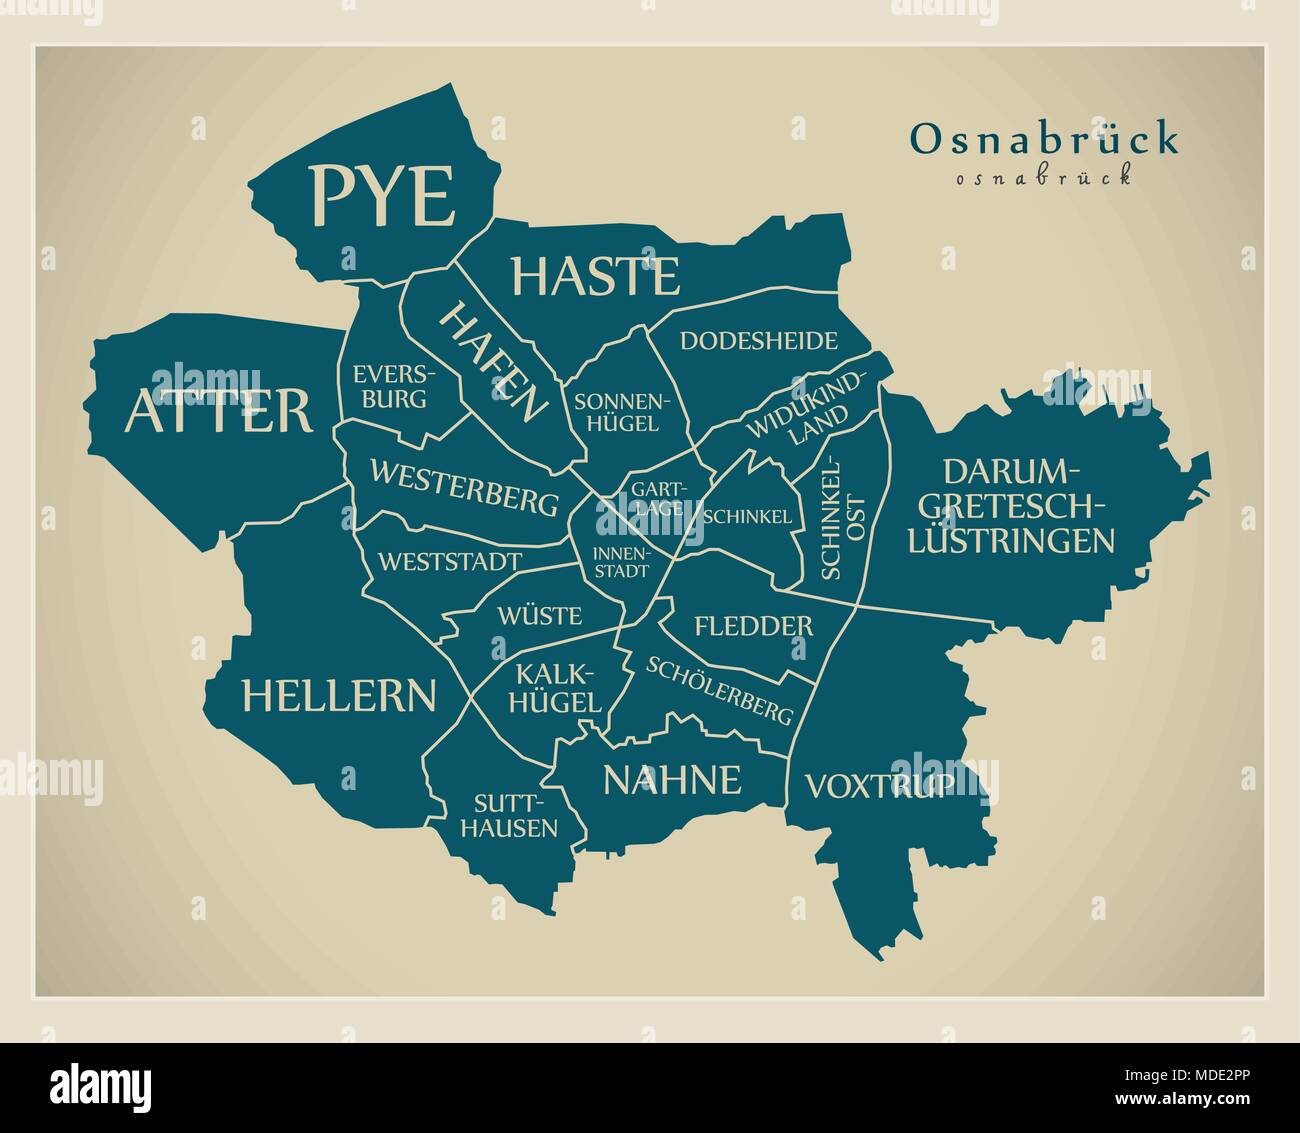 Città moderna mappa - Osnabruck città della Germania con comuni e titoli DE Illustrazione Vettoriale